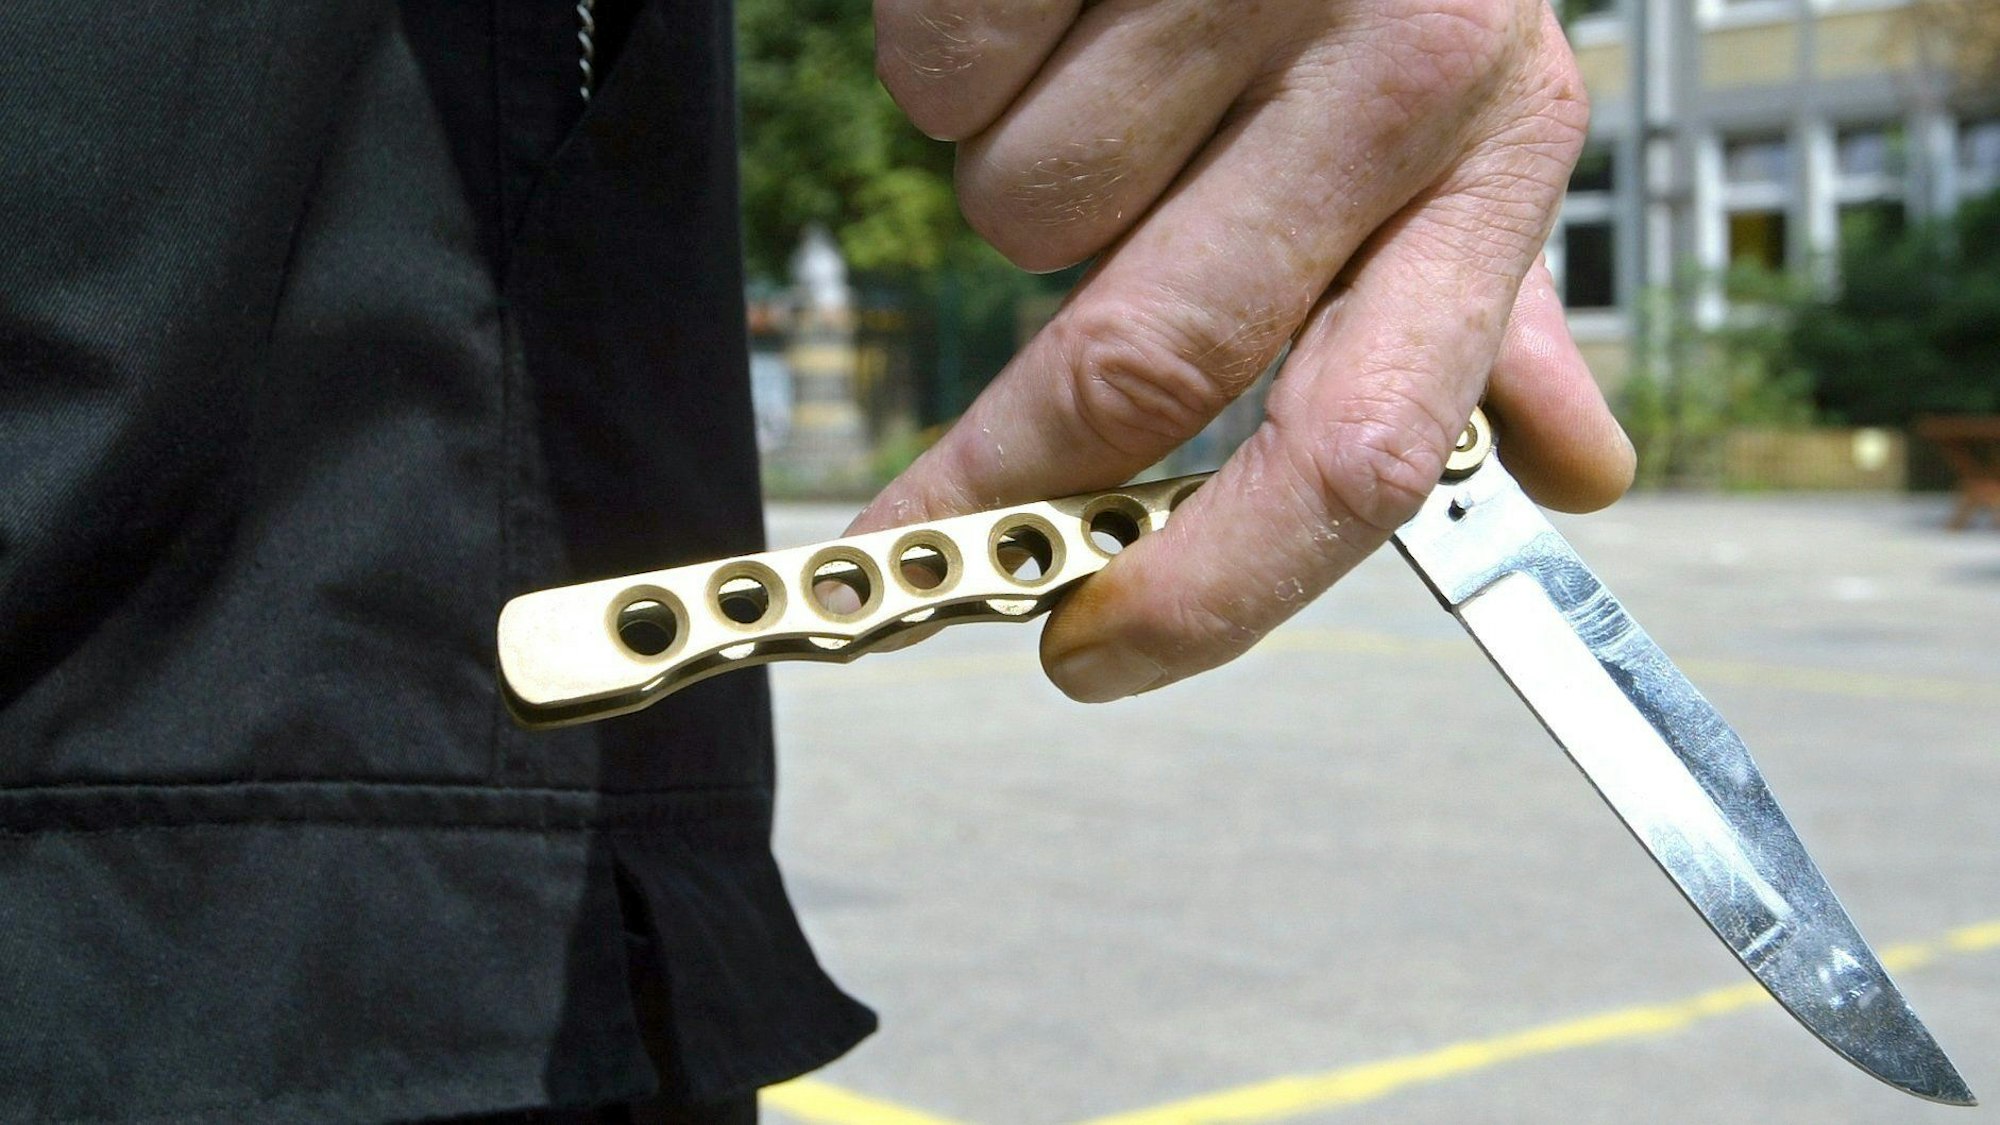 Eine Person hält auf dem Hof einer Schule ein so genanntes Butterflymesser in seiner Hand.